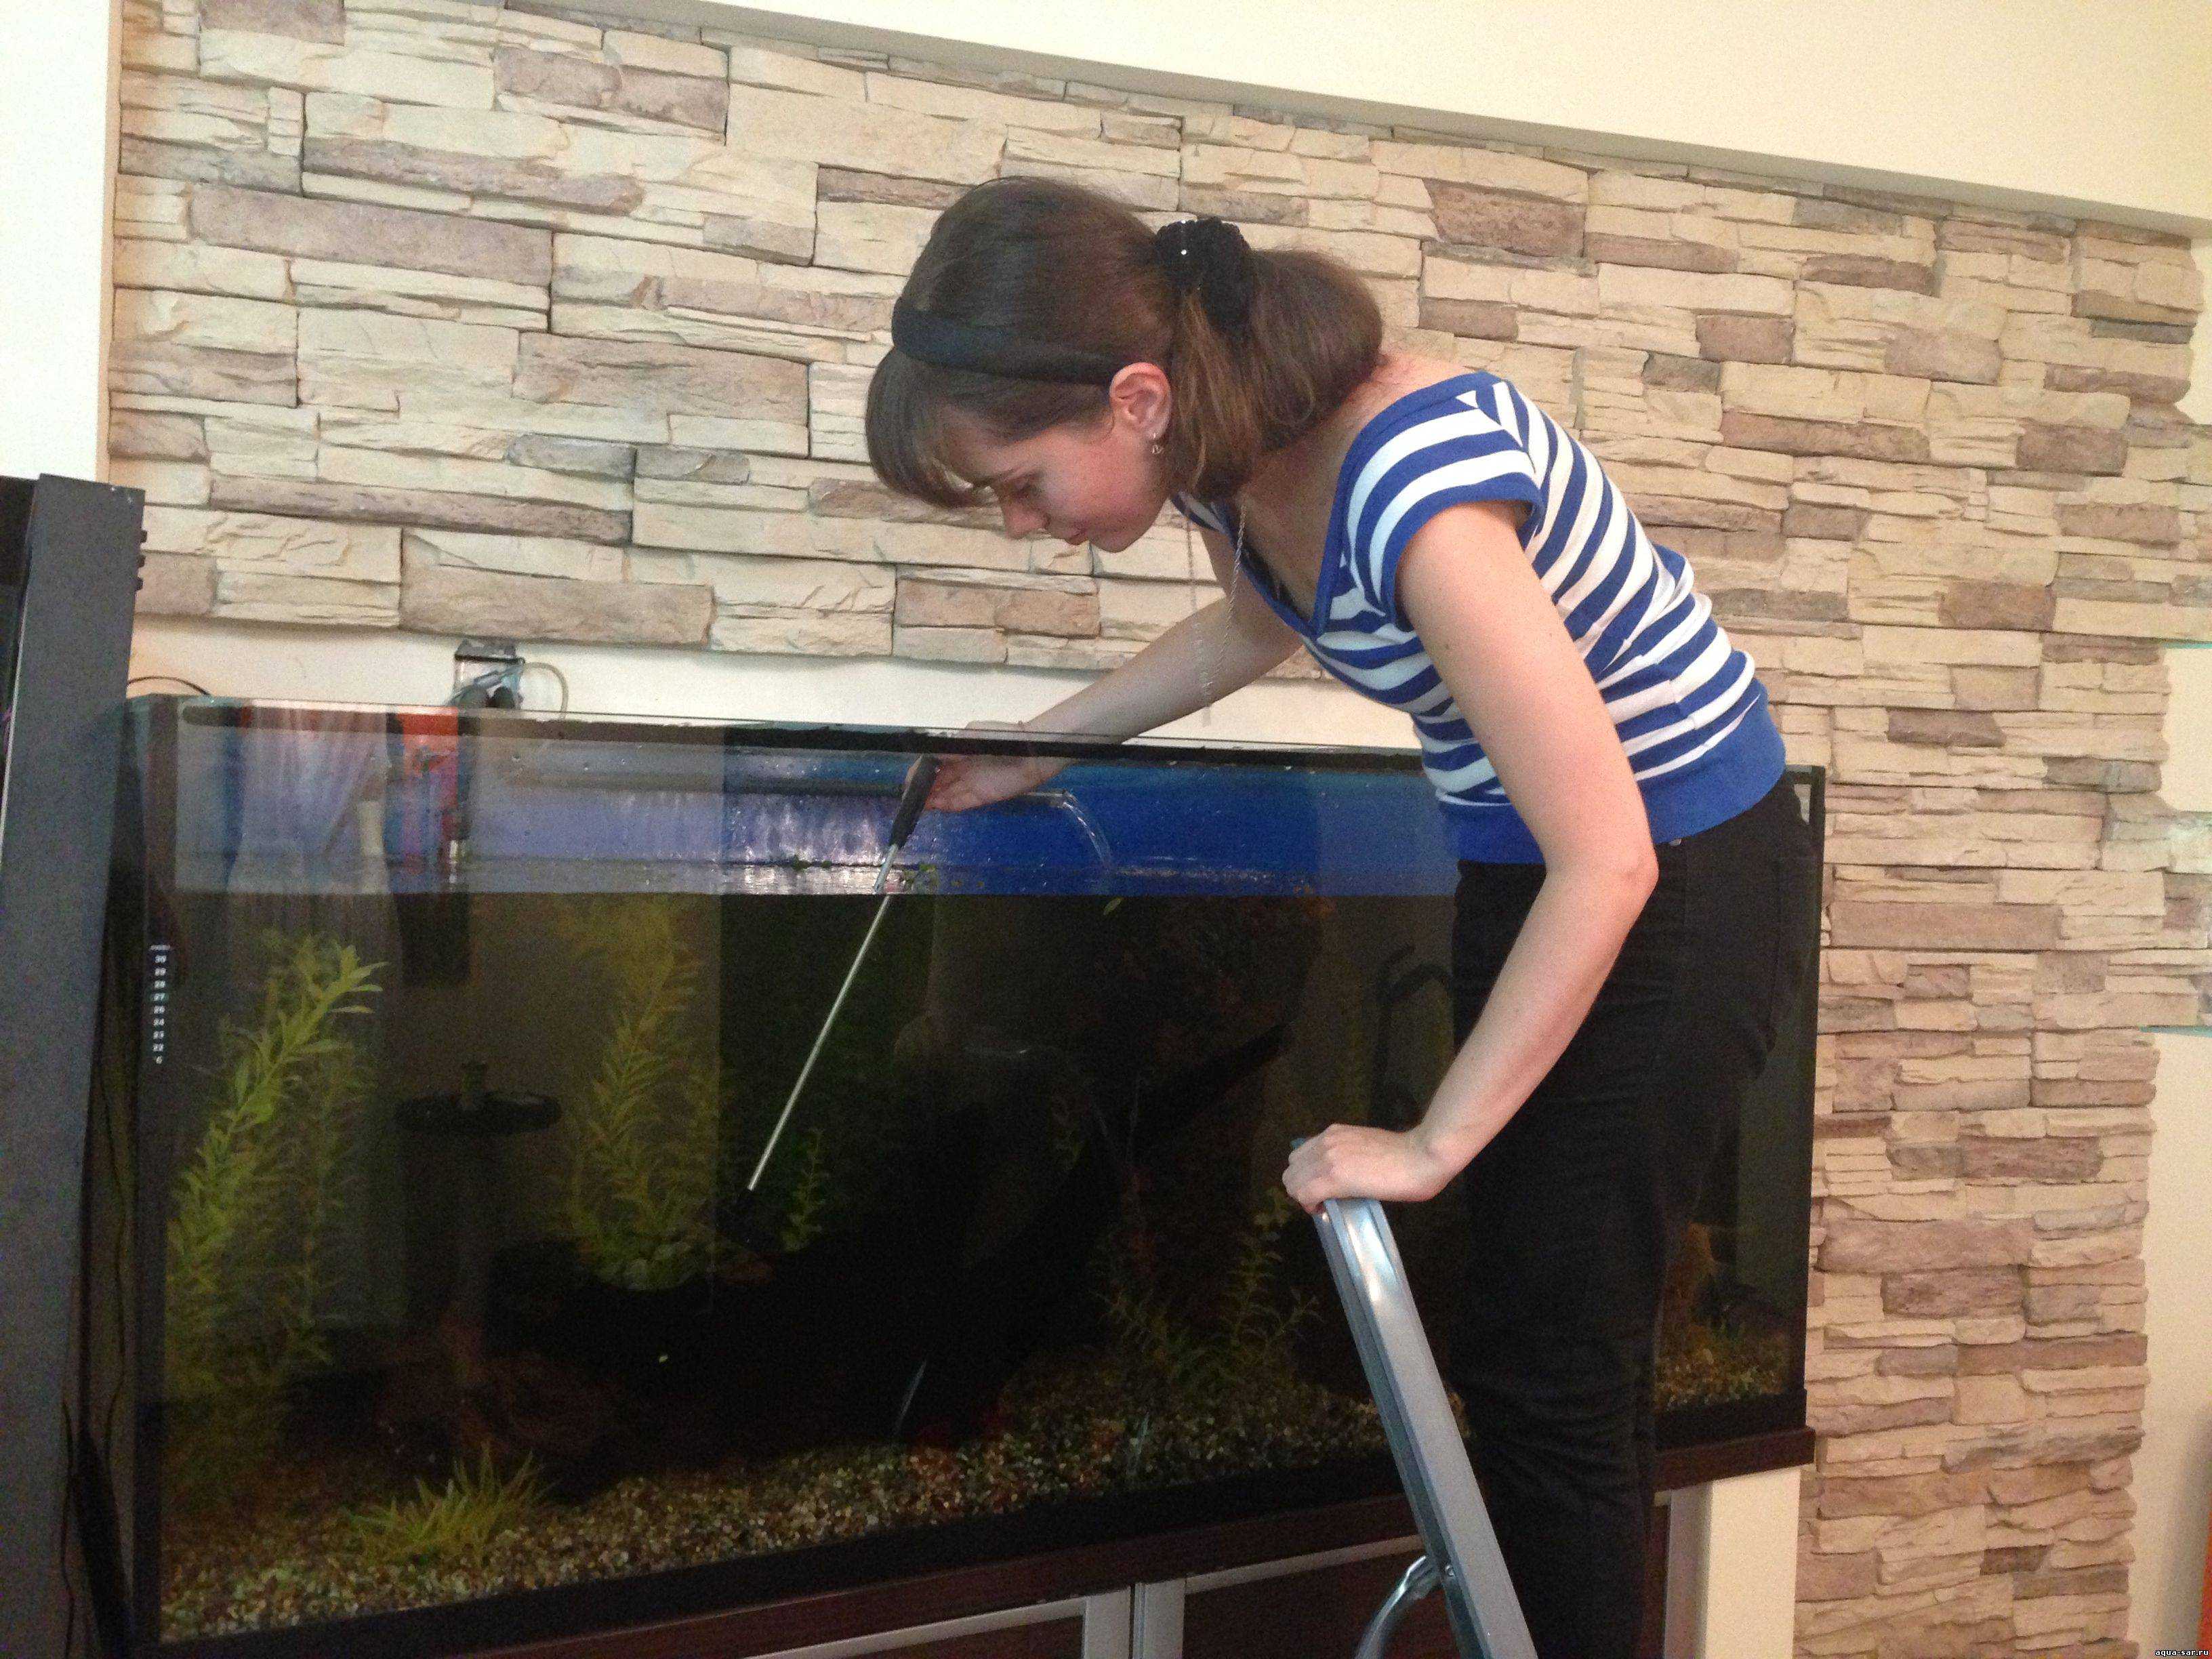 Инструкция по очистке домашнего аквариума